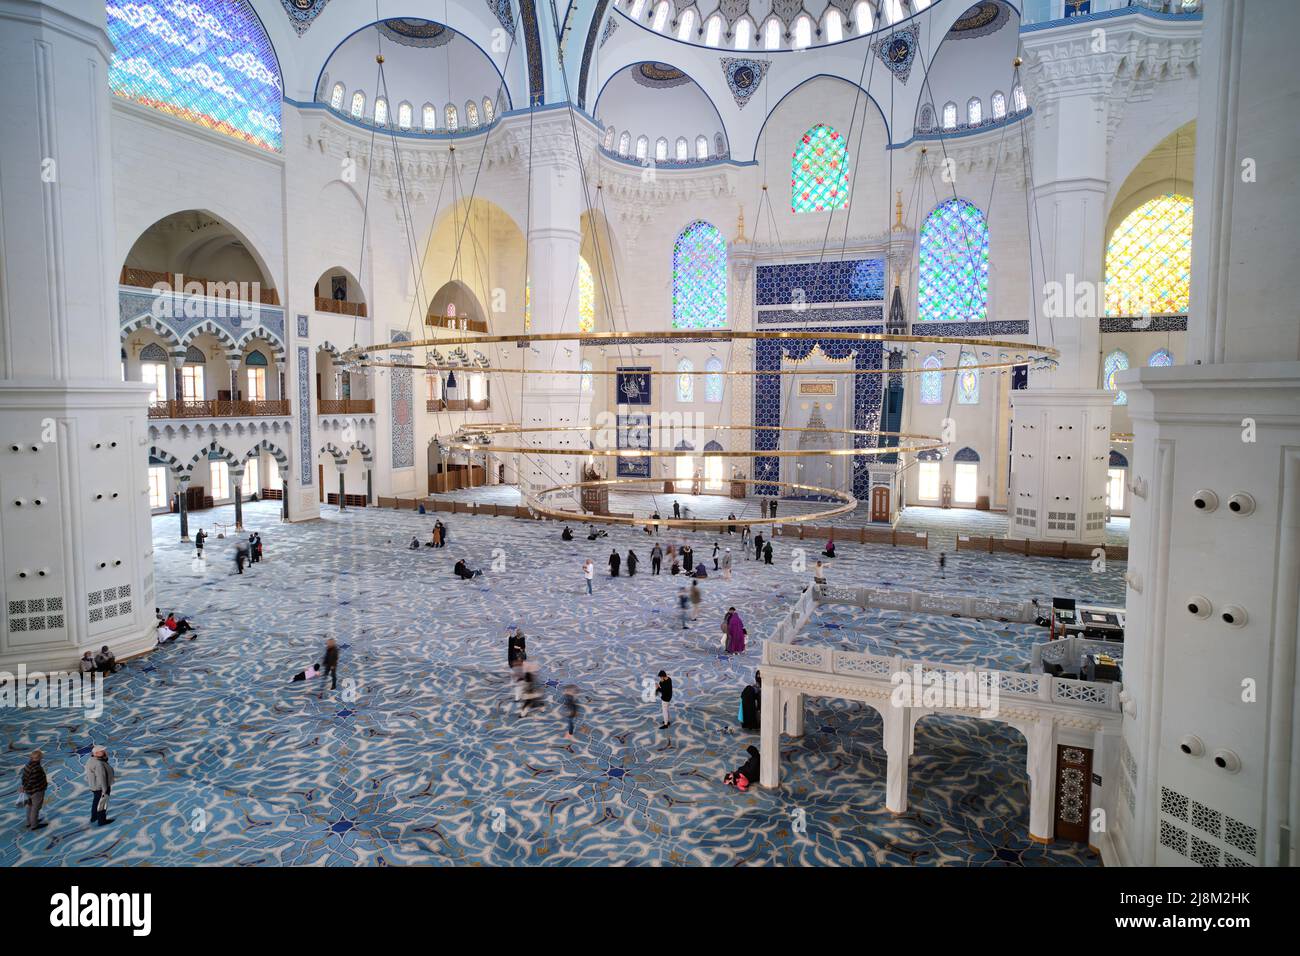 Detalle interior de la Gran Mezquita Camlica, la mezquita más grande de Turquía situada en la colina Camlica, terminada e inaugurada en marzo de 2019. Foto de stock